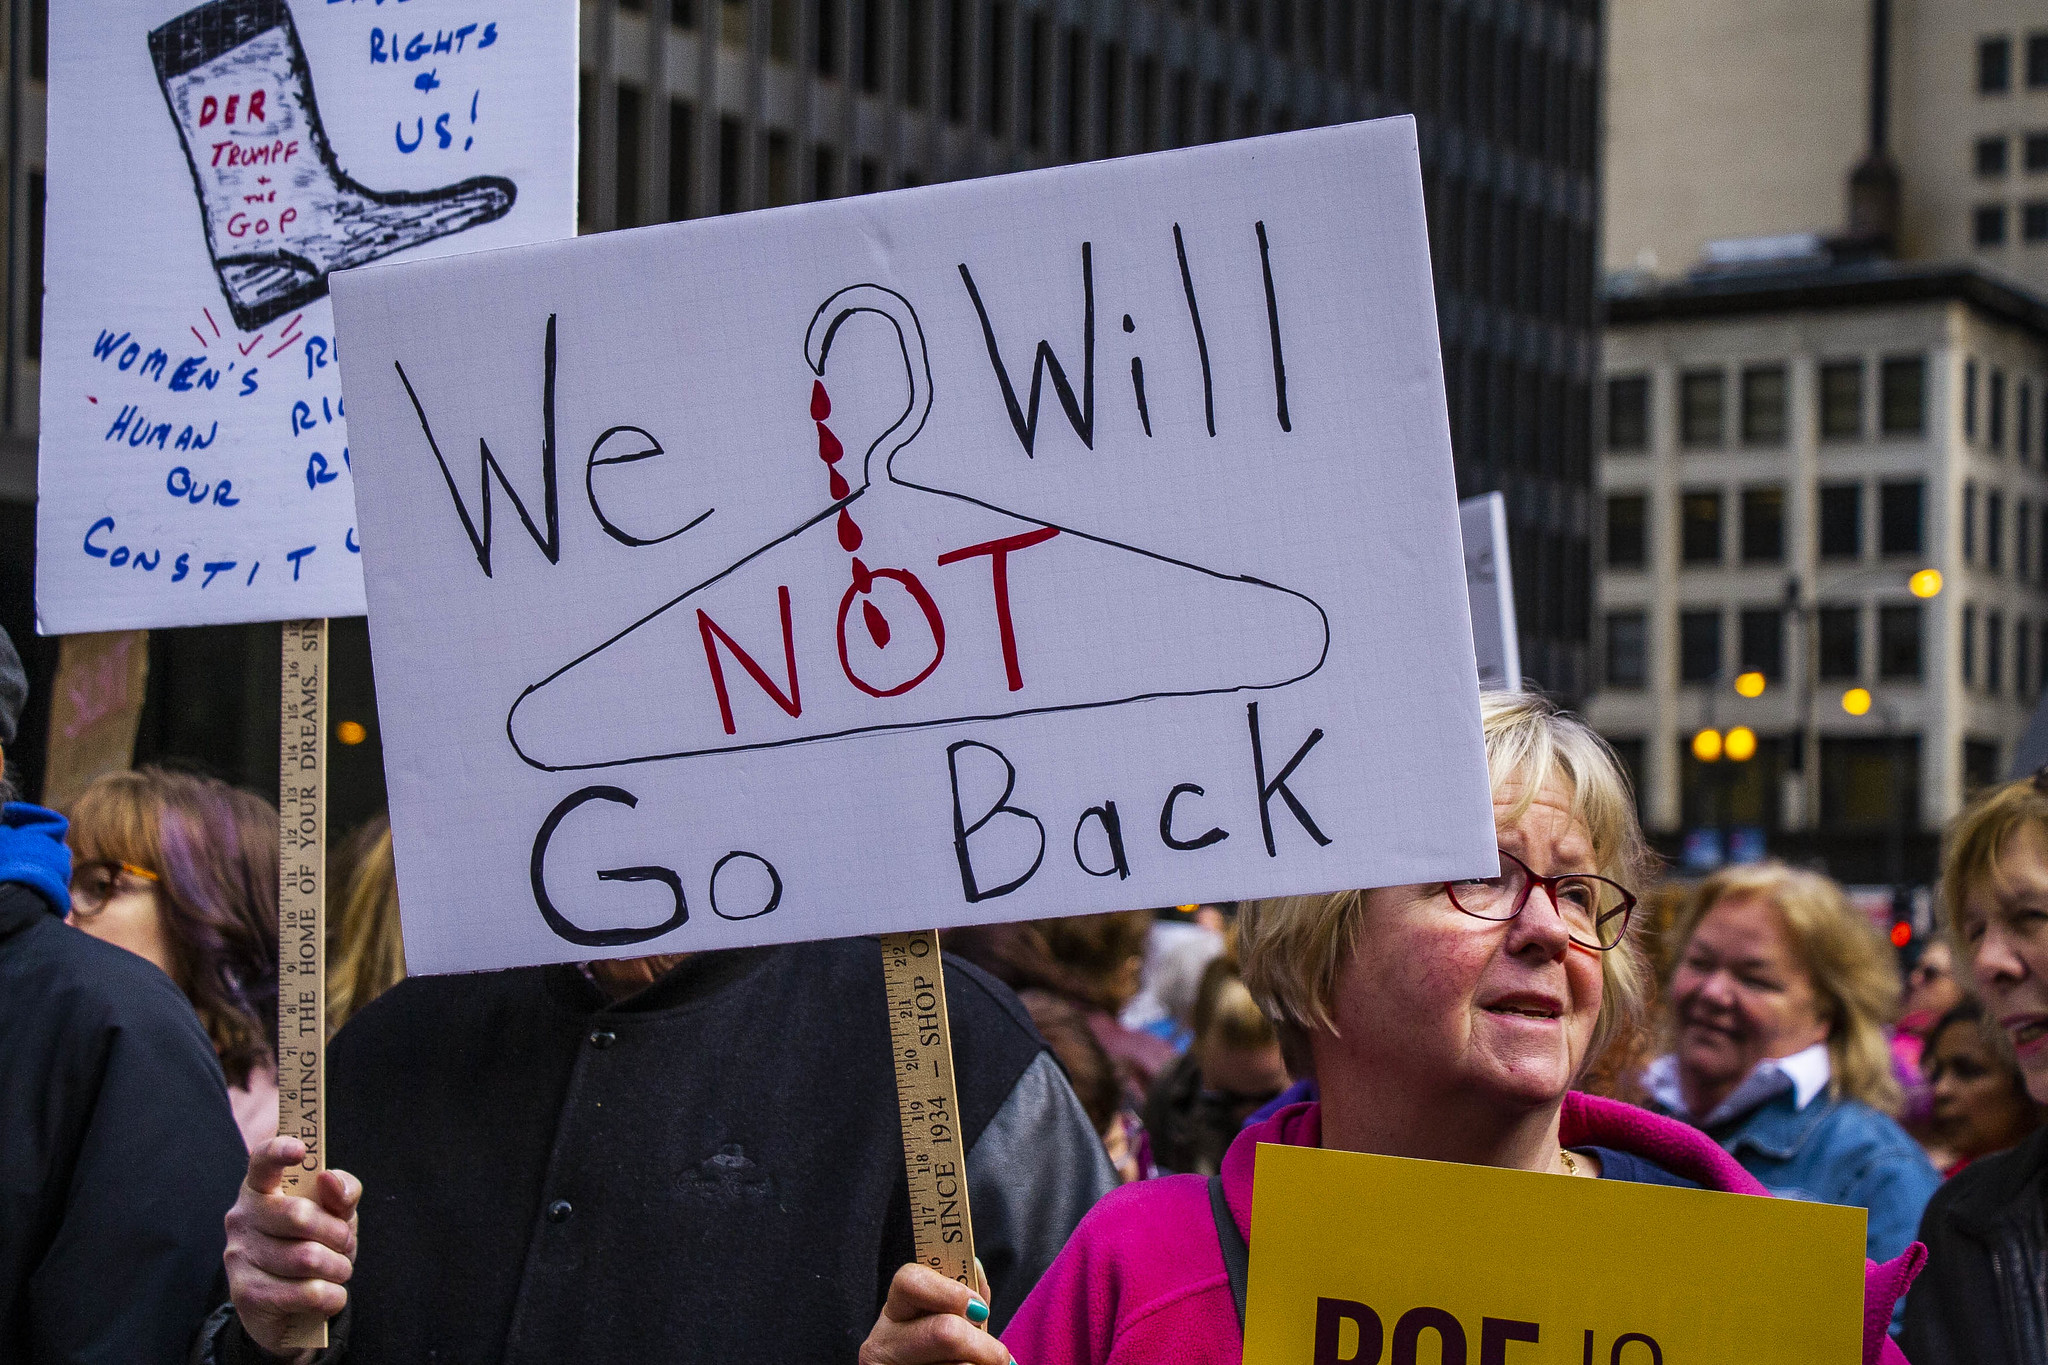 Marcha de las mujeres por los derechos reproductivos, Chicago, Illinois. Mayo de 2019. Foto: Flickr / Charles Edward Miller